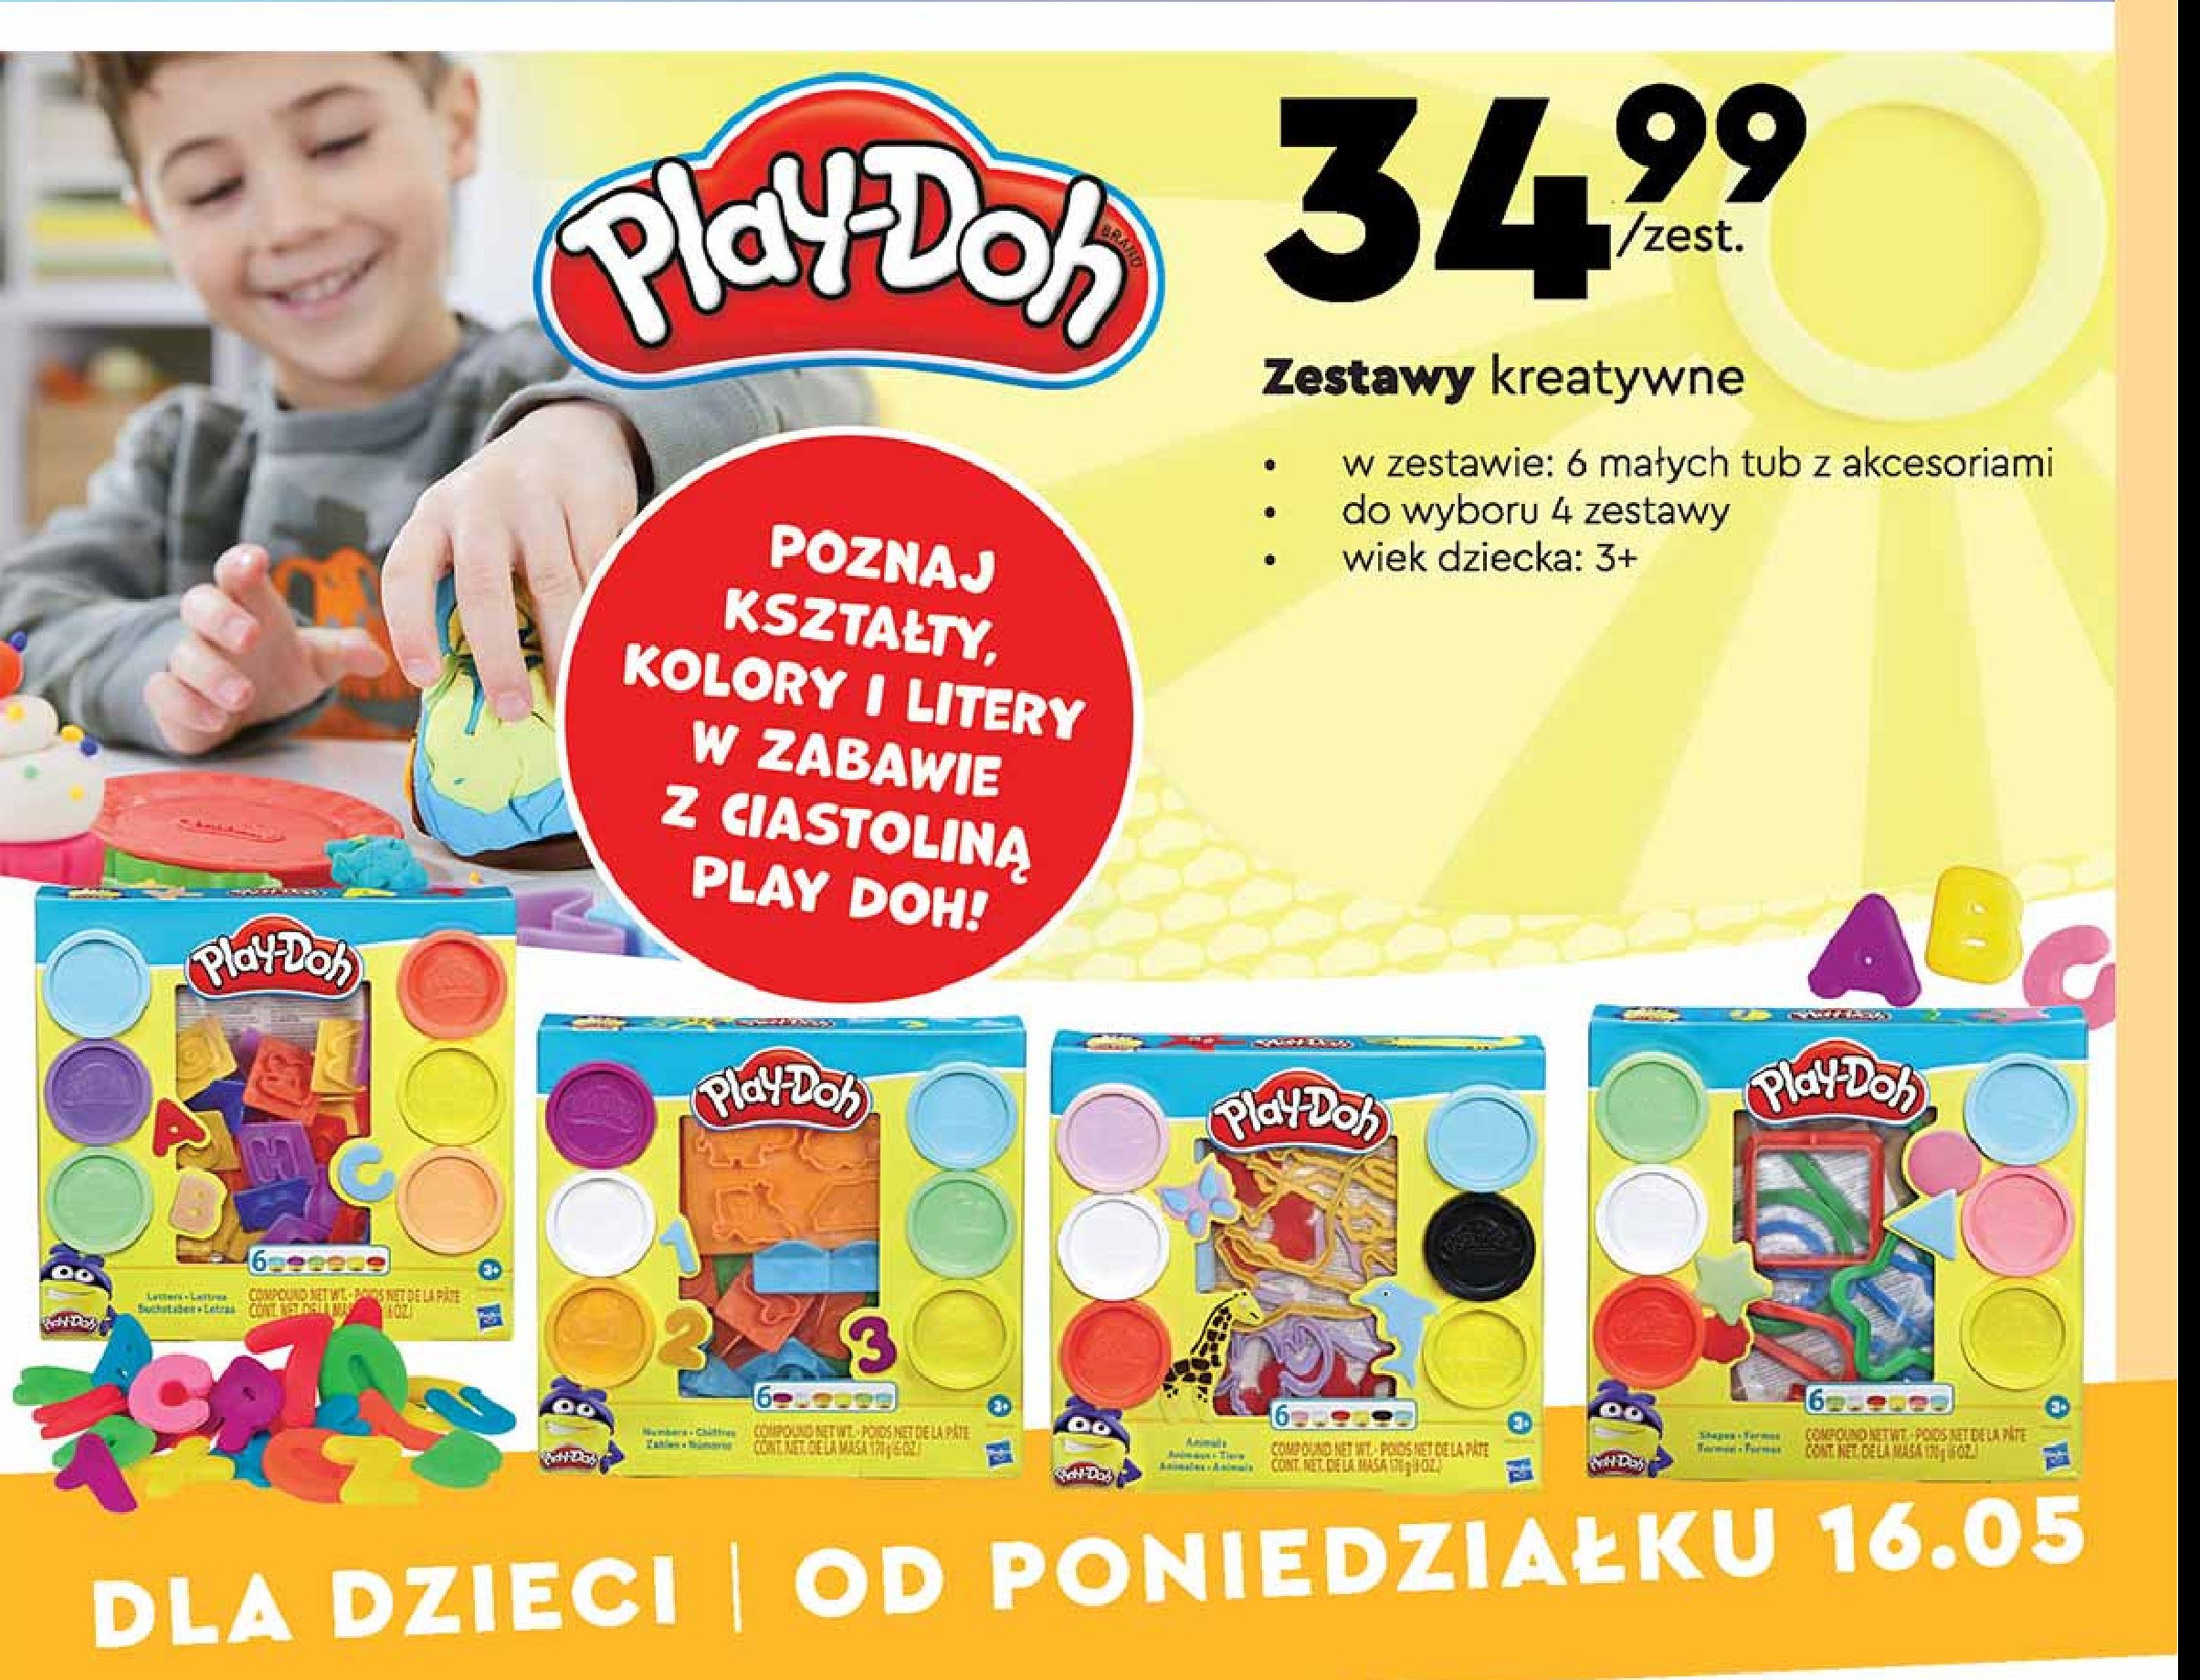 Zestaw kreatywny Play-doh promocja